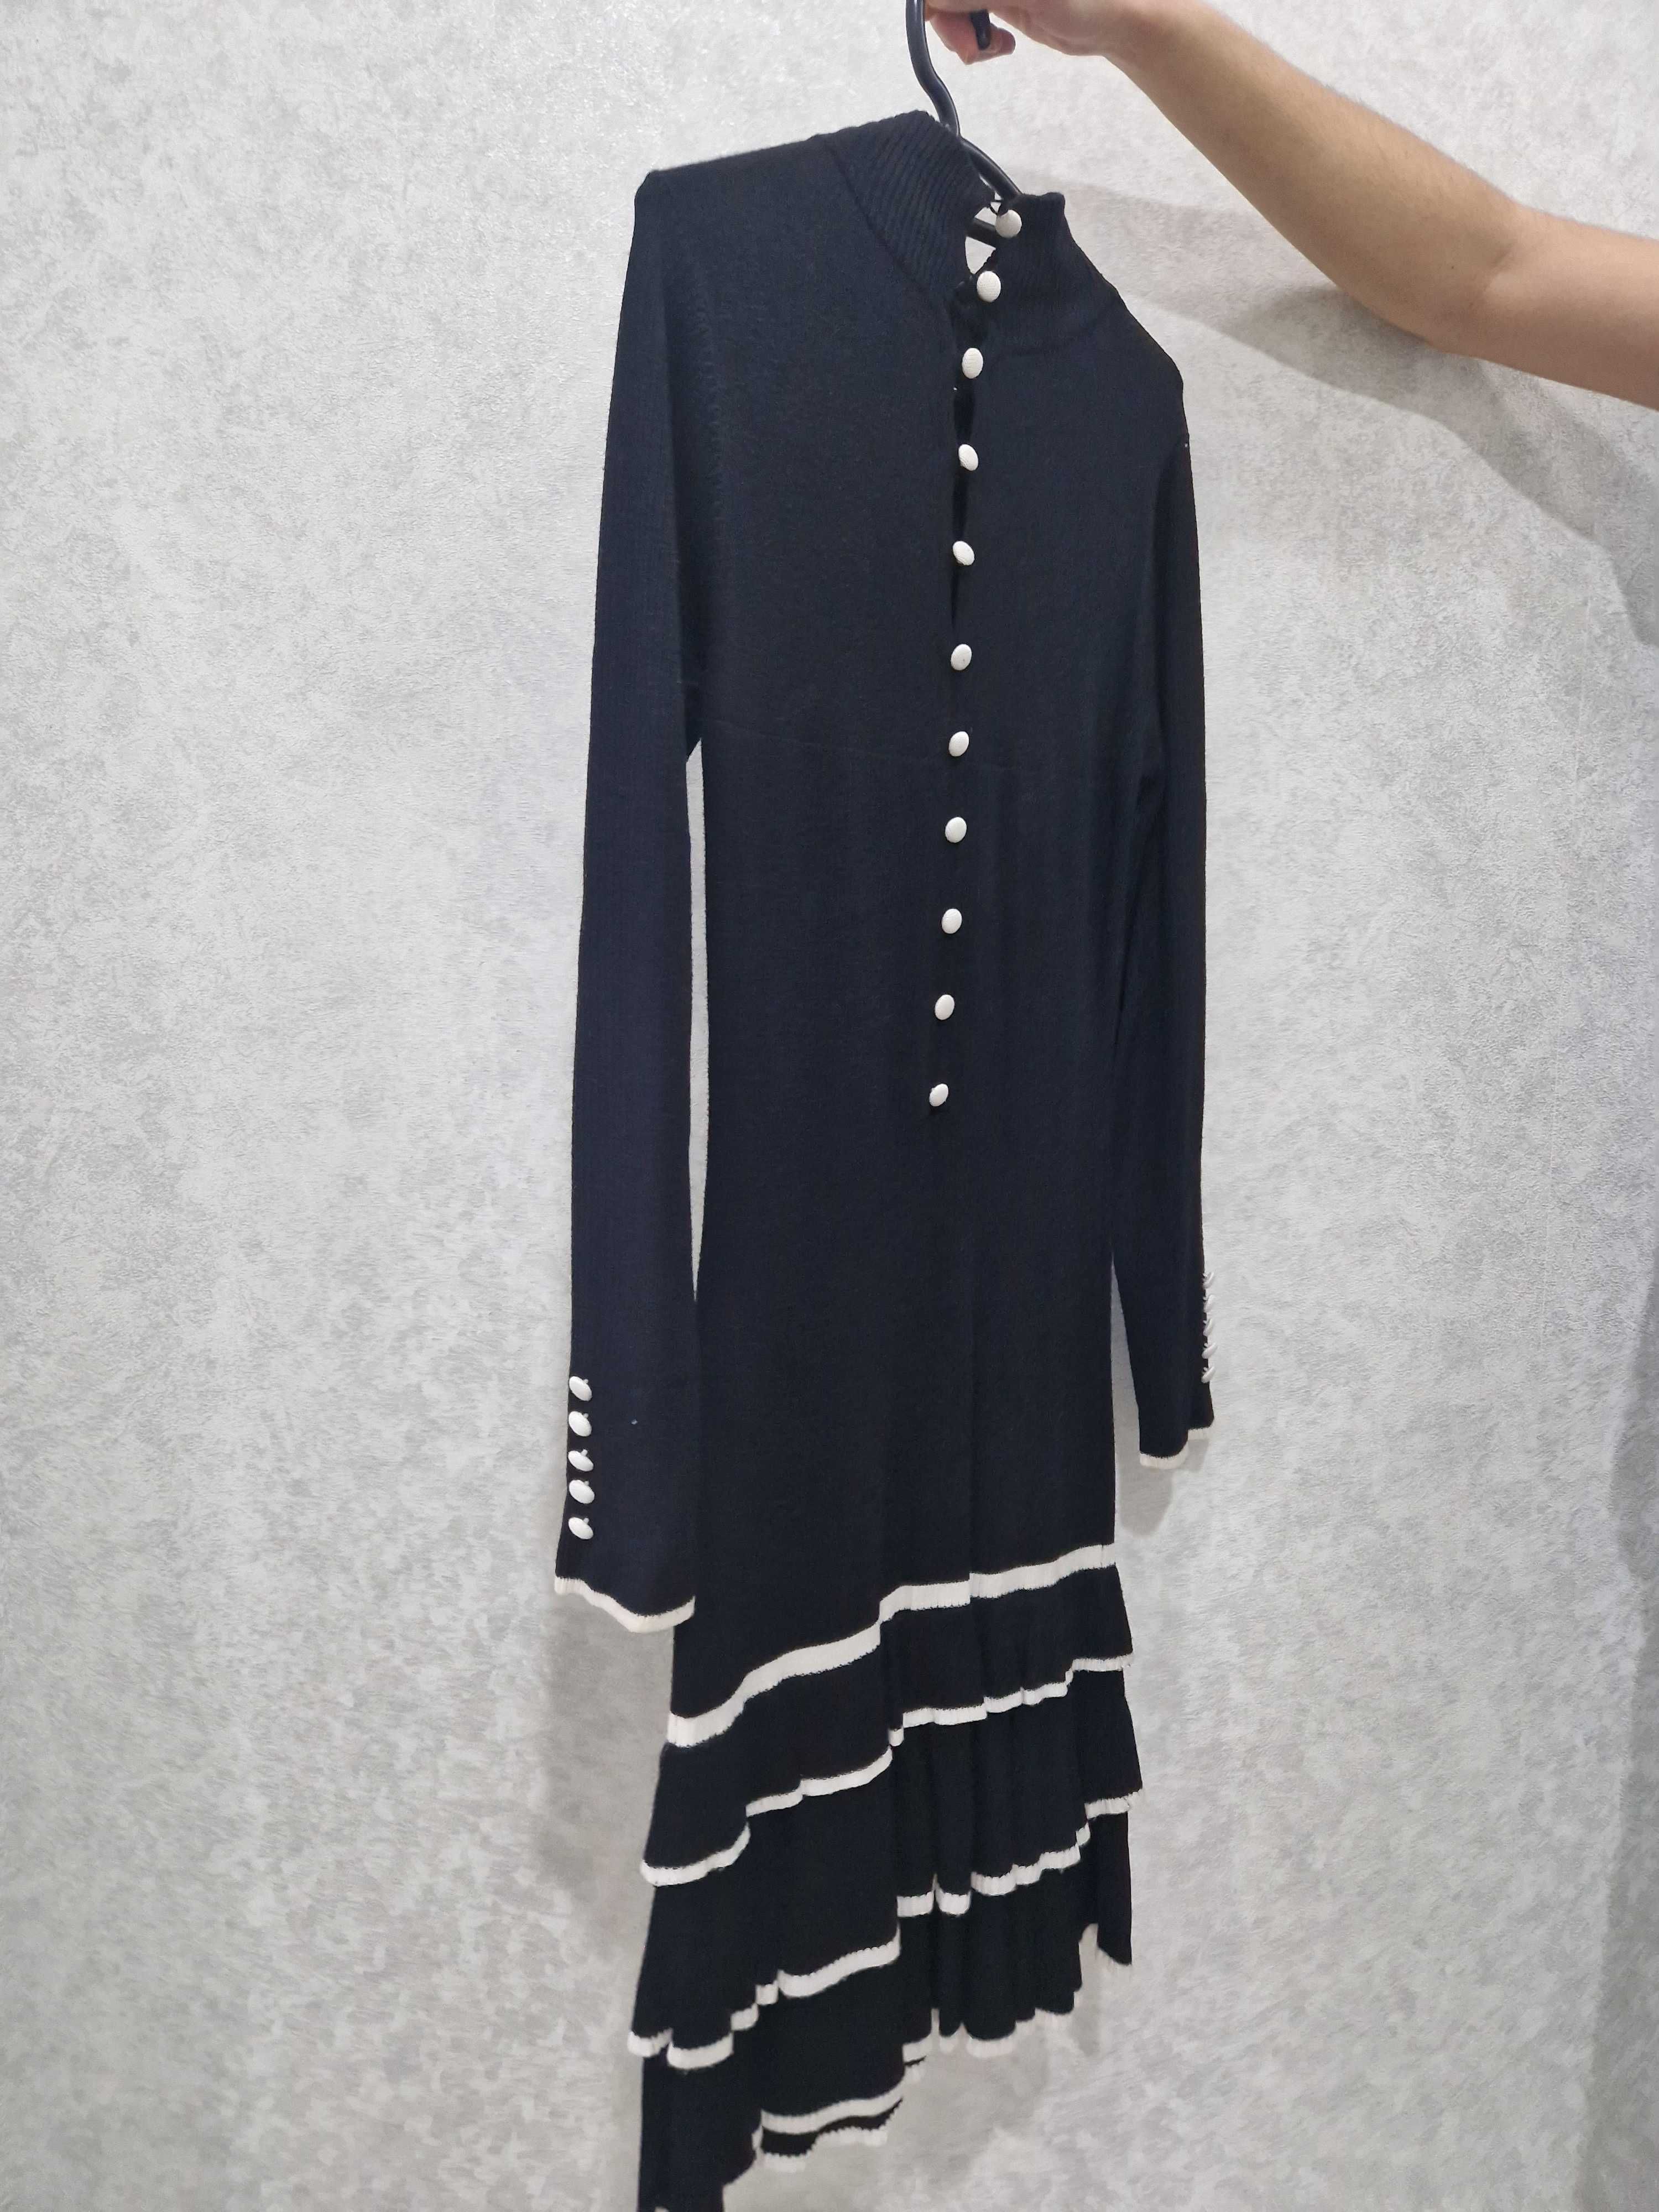 Модная женская одежда фирмы LEOGUY, цена 7500тг